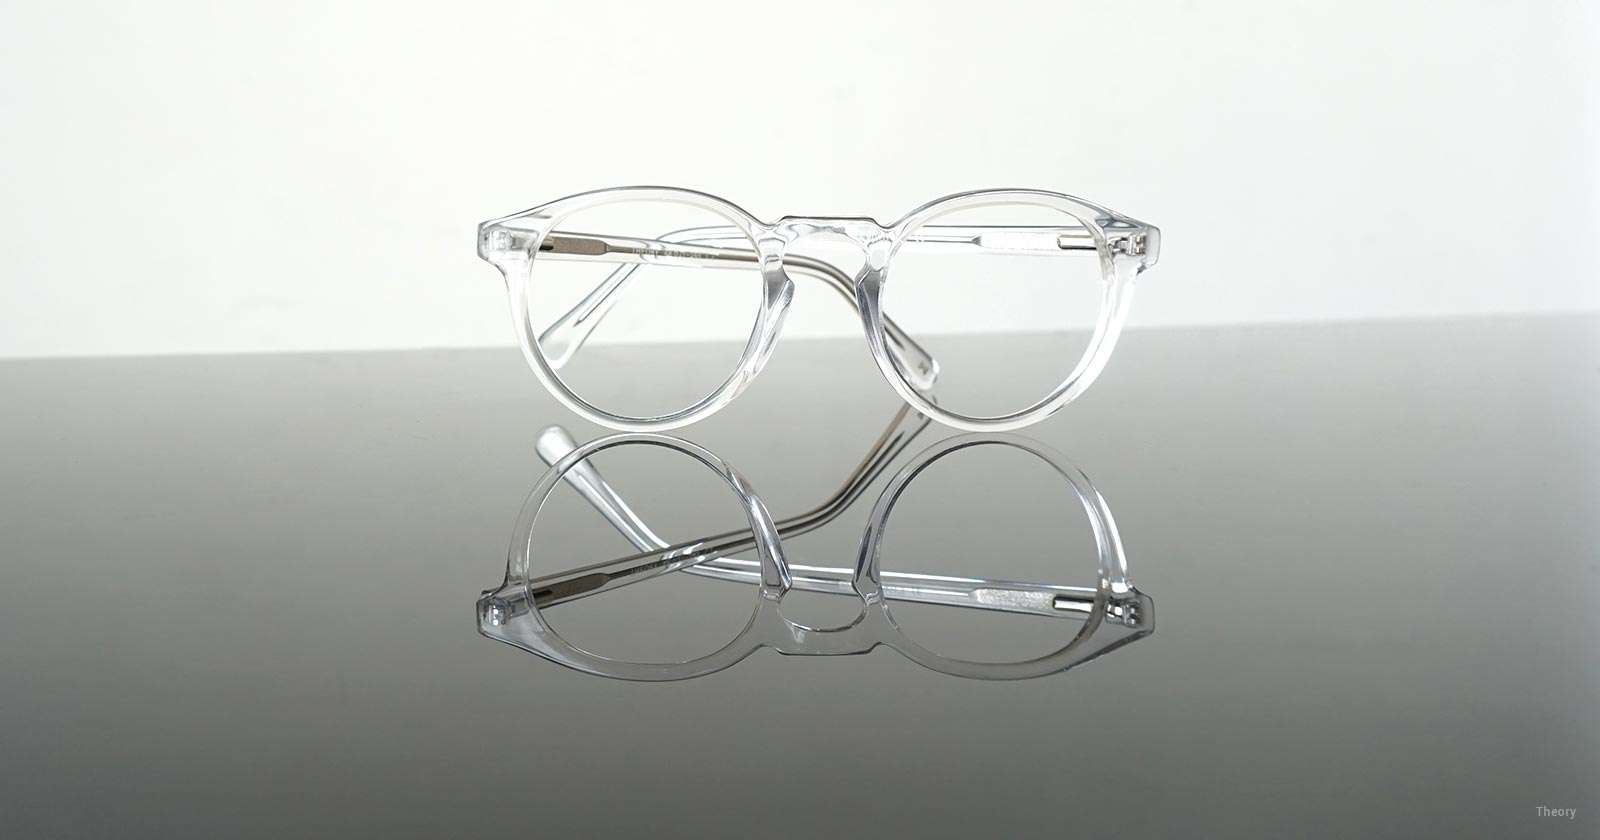 Prism Lenses, Prism Correction in Eyeglasses